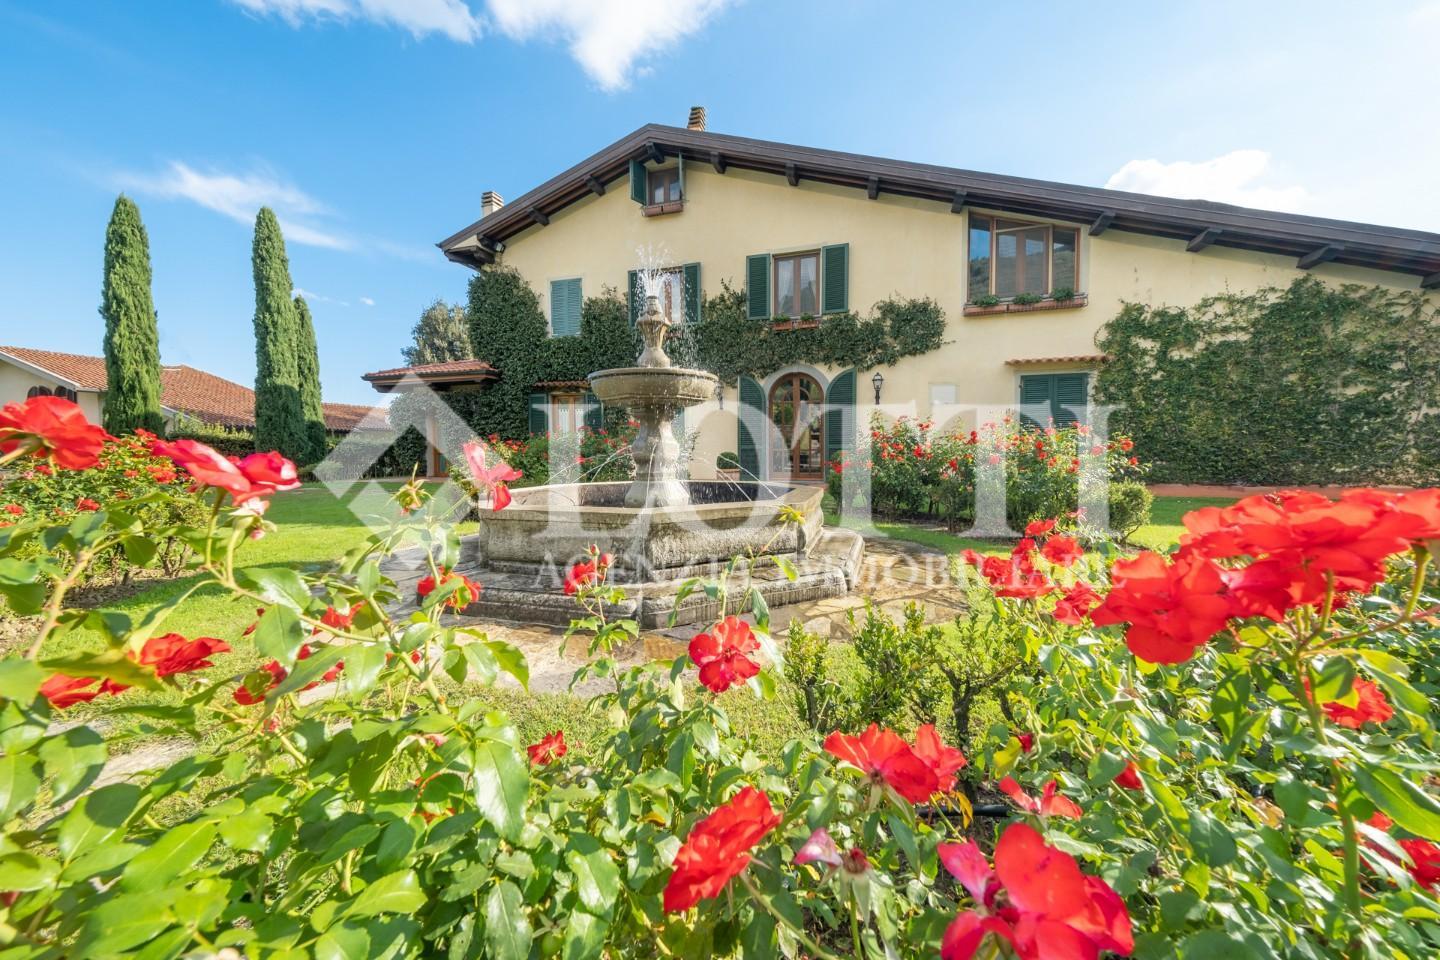 Villa for sale in La Croce, Buti (PI)